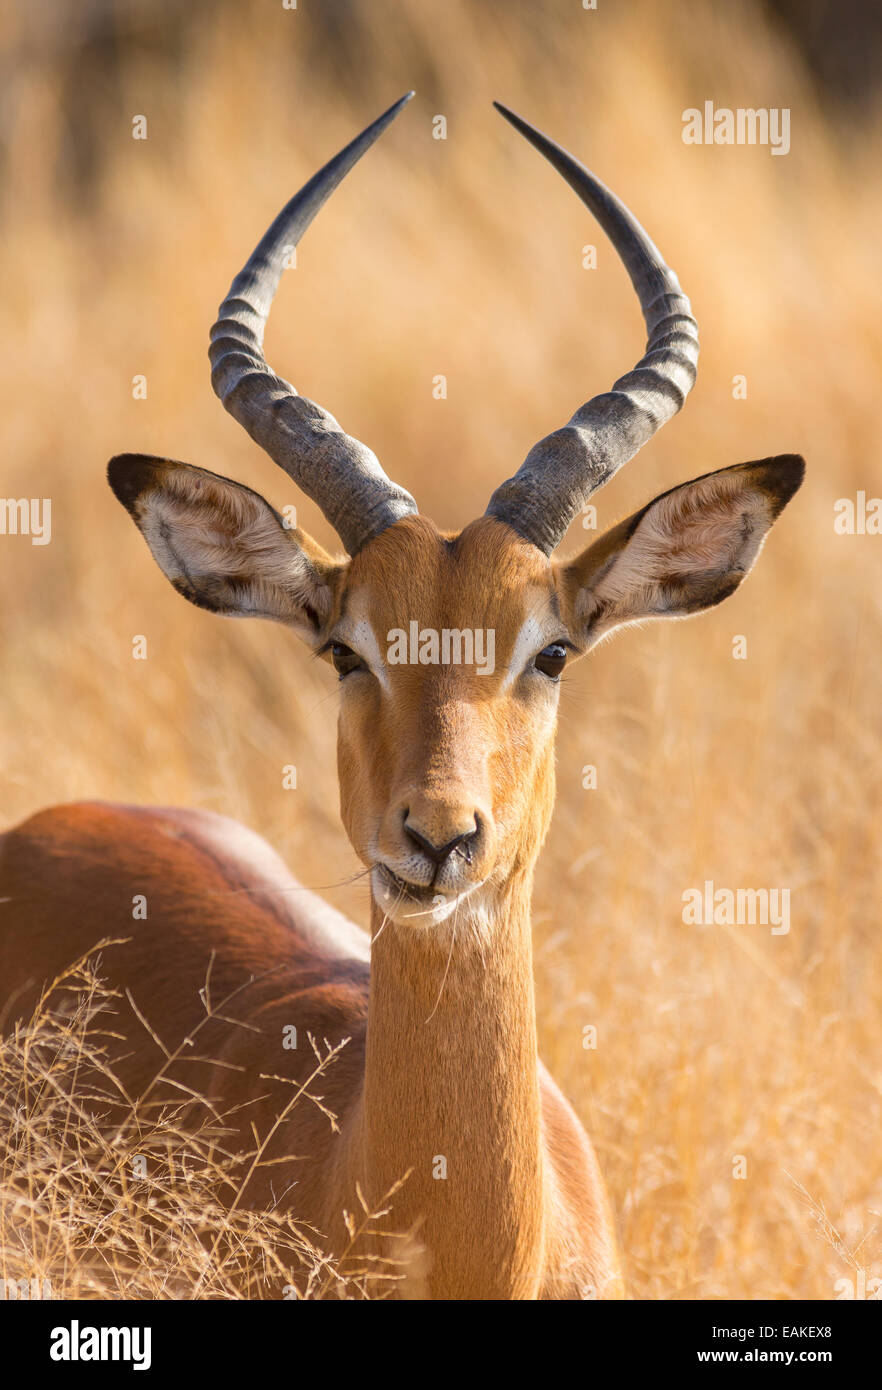 Le parc national Kruger, AFRIQUE DU SUD - Mâle impala Aepyceros melampus Banque D'Images